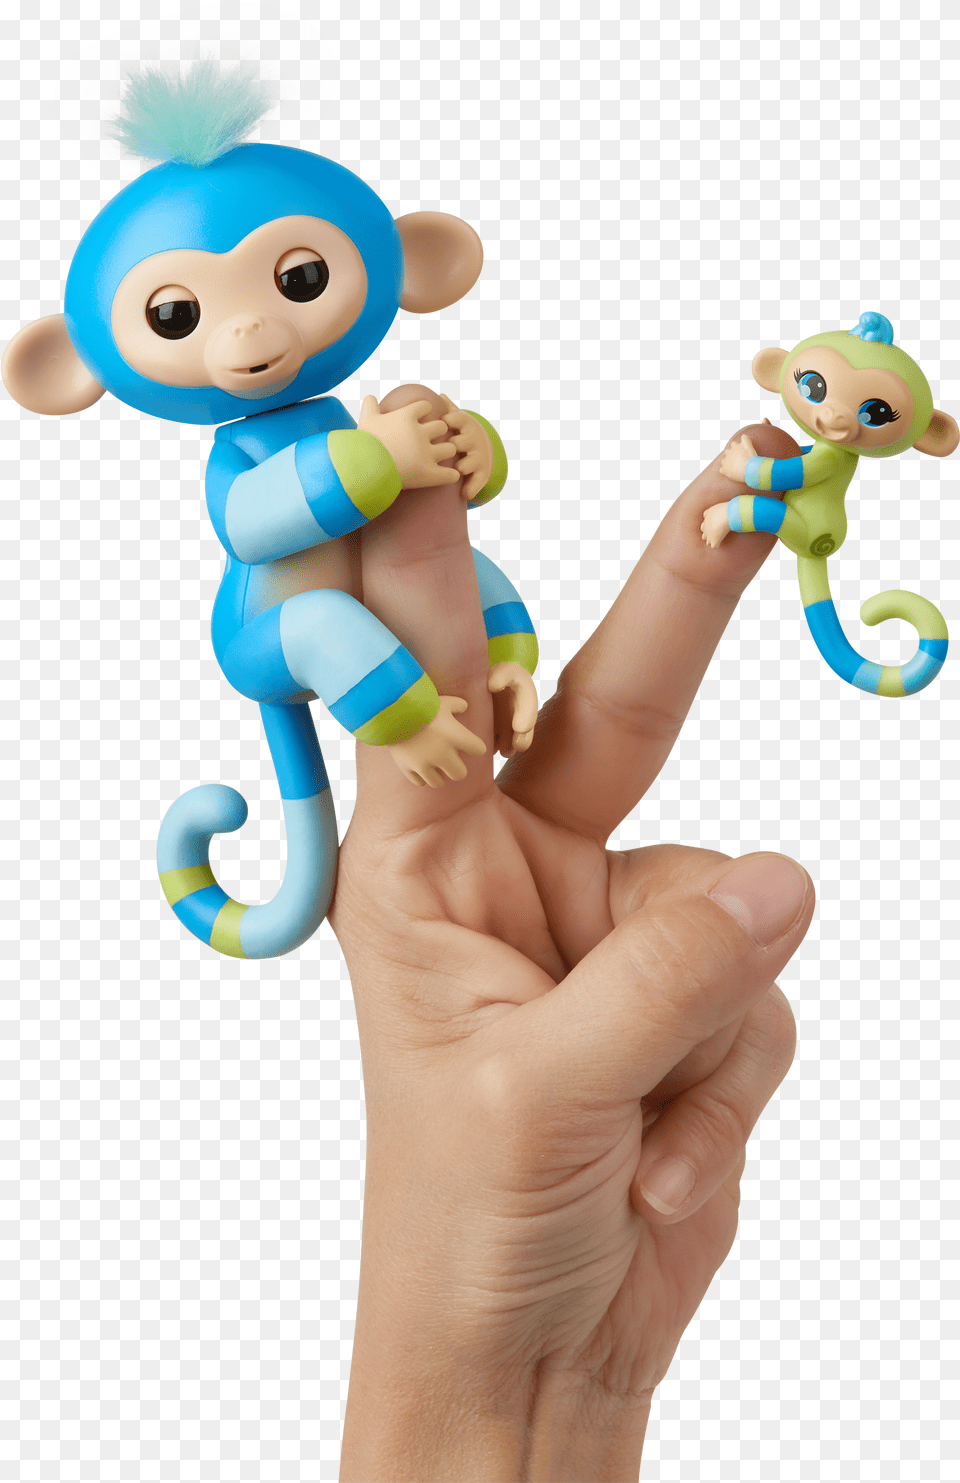 Fingerlings Baby Monkey Amp Mini Bffs Download Fingerlings Baby Monkey Bffs Png Image